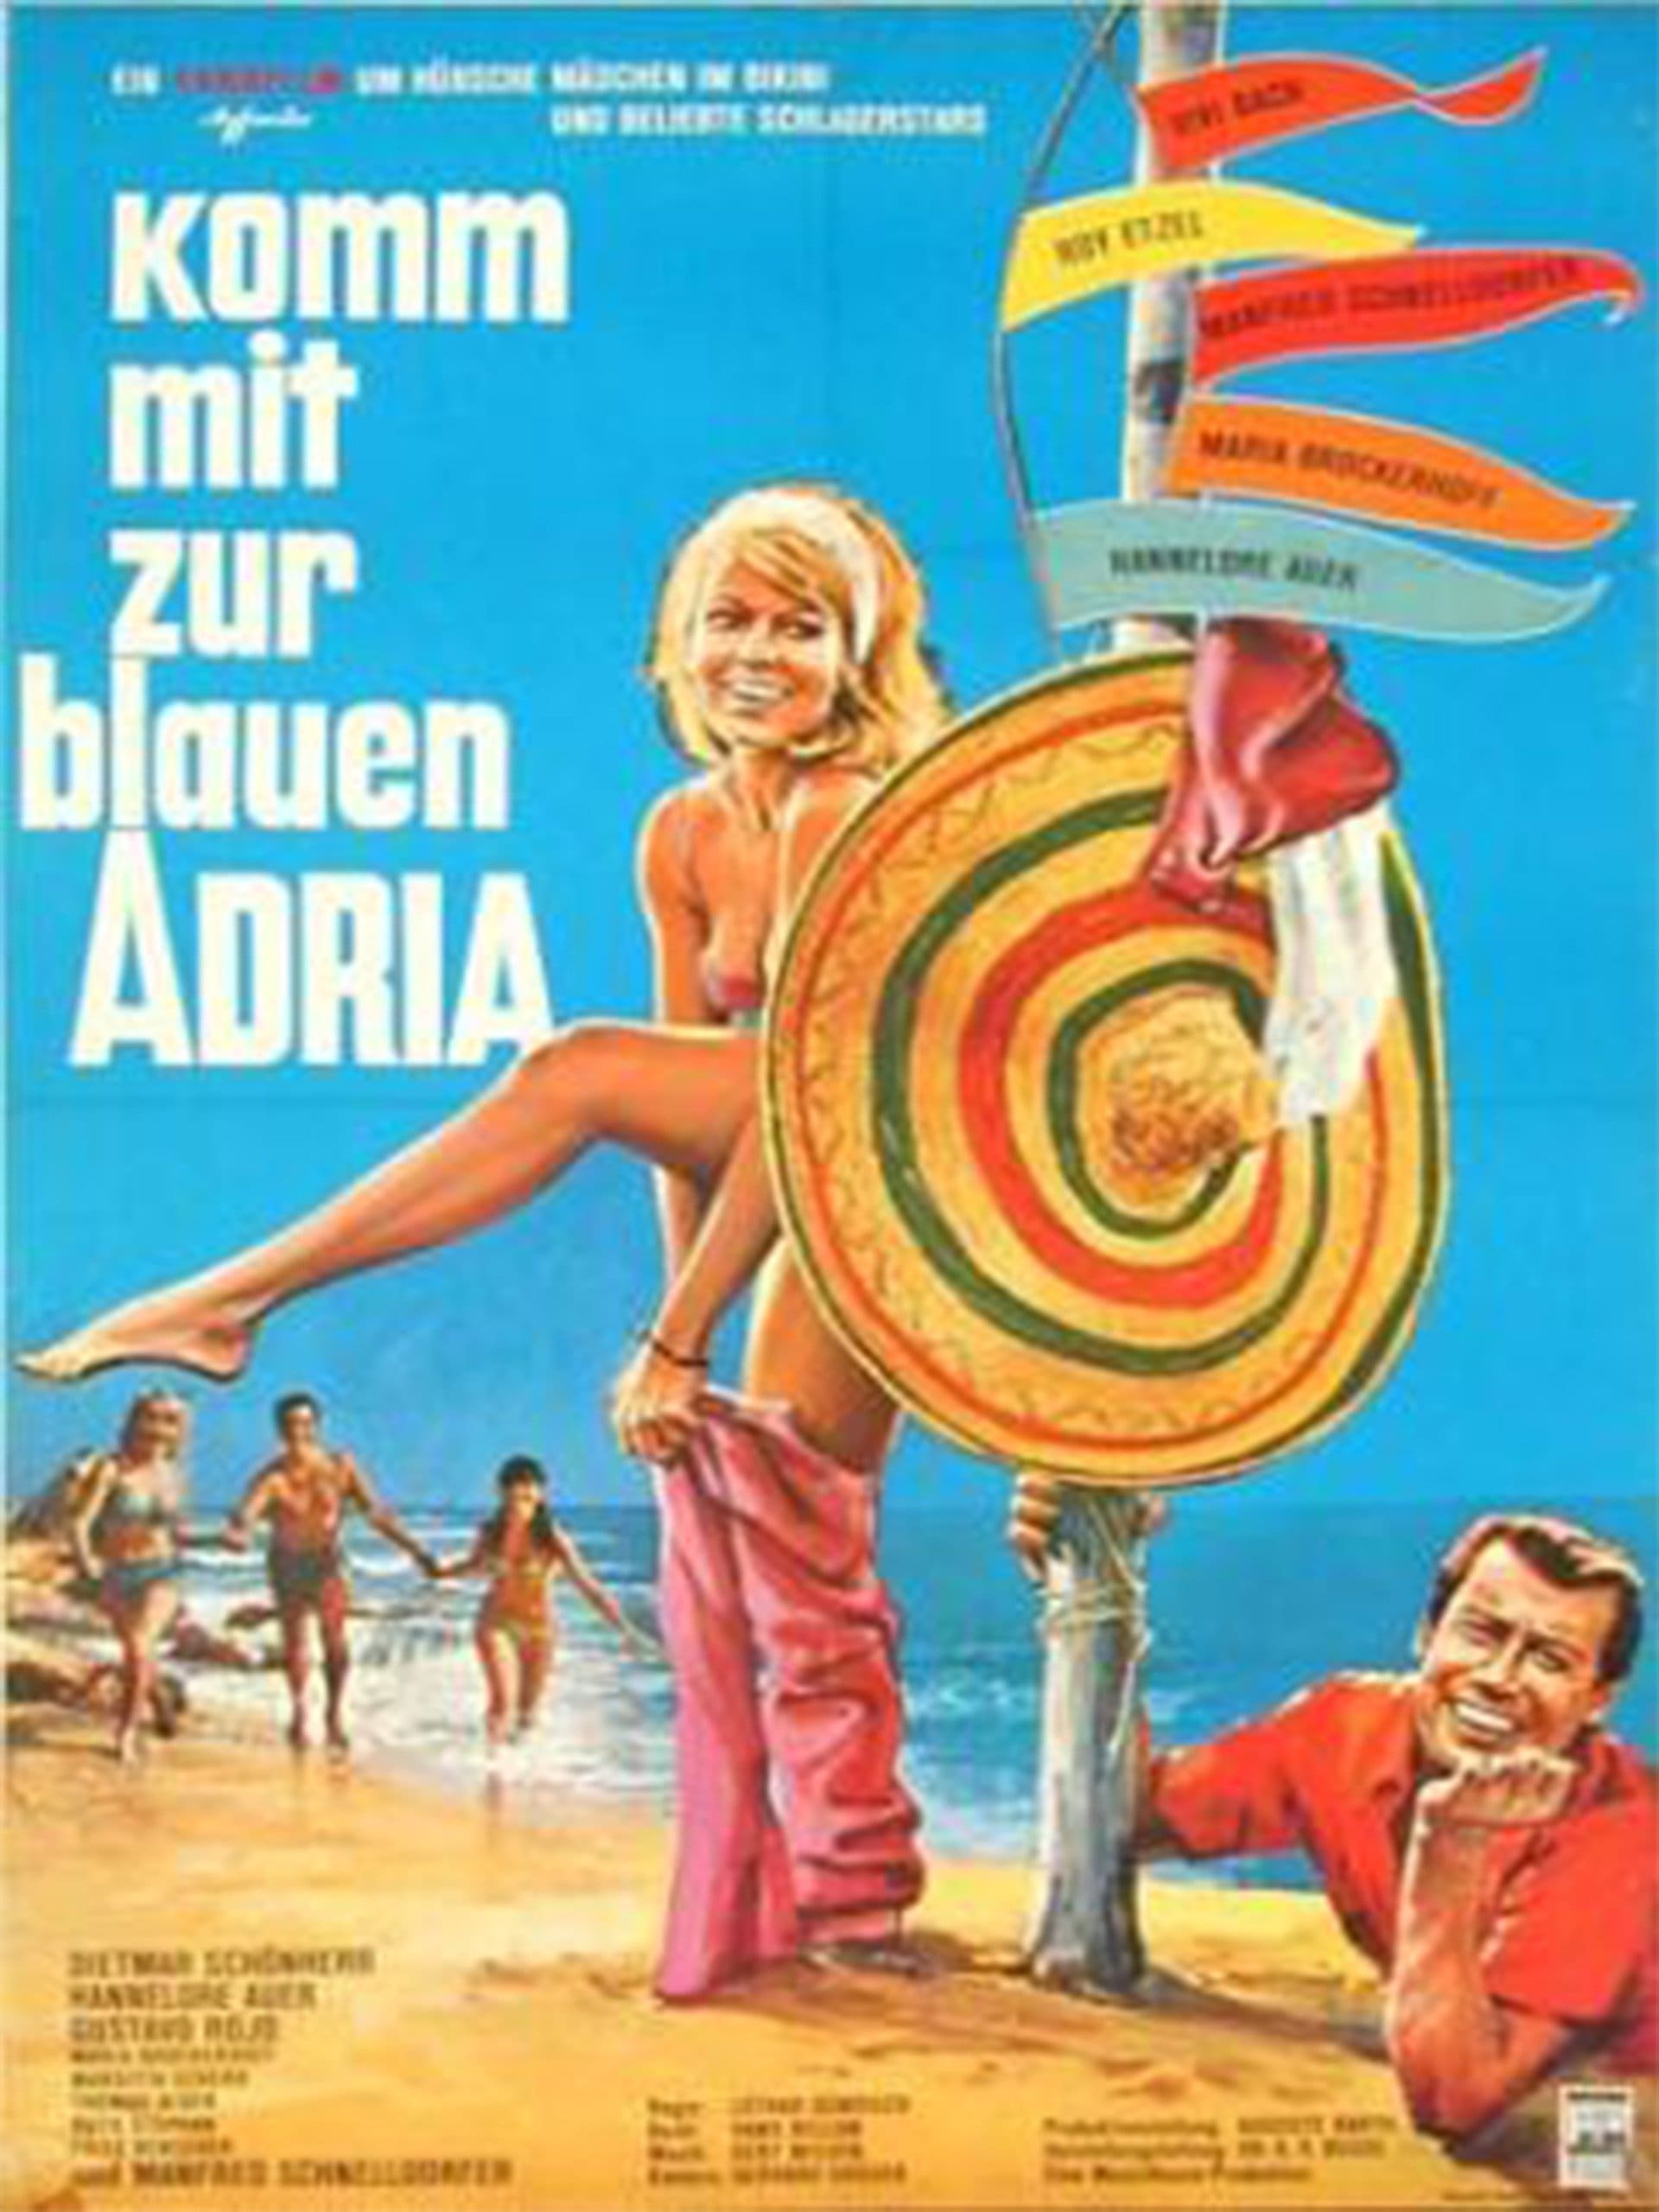 Komm mit zur blauen Adria (1966)